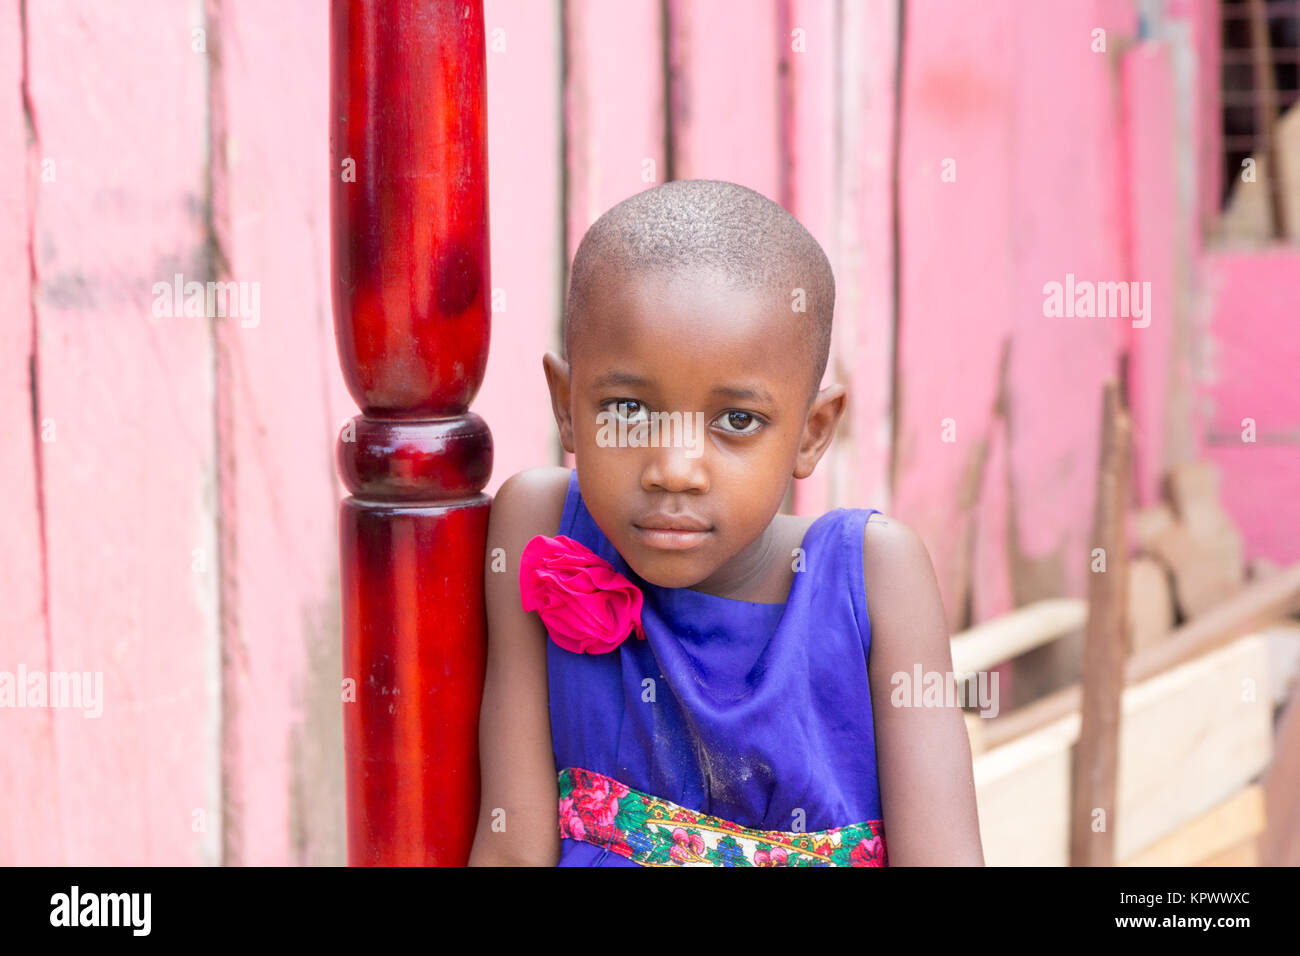 Eine schöne Ugandischen lächelnde Mädchen. Sie ist in einem blauen Kleid mit einem rosa Blume darauf gekleidet. Stockfoto